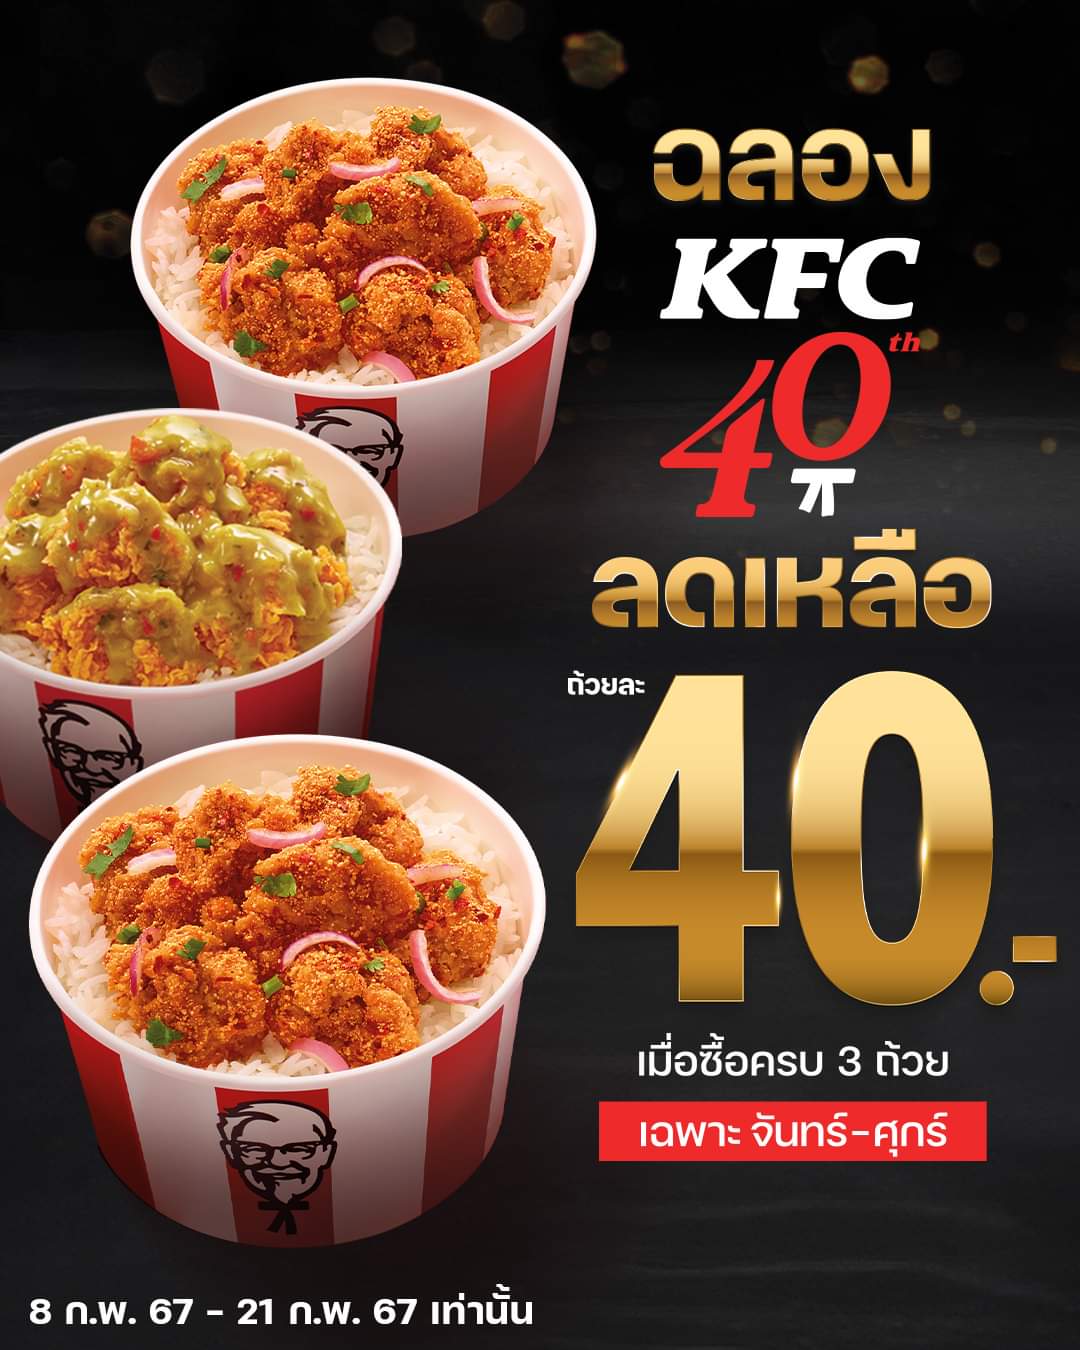 โปรโมชั่น เคเอฟซี : ฉลองครบรอบ 40 ปี!!! KFC จัดดีลดีมาให้ #ข้าวไก่กรอบผู้พัน ลดเหลือถ้วยละ 40.- เมื่อซื้อครบ 3 ถ้วย ในวันจันทร์-ศุกร์